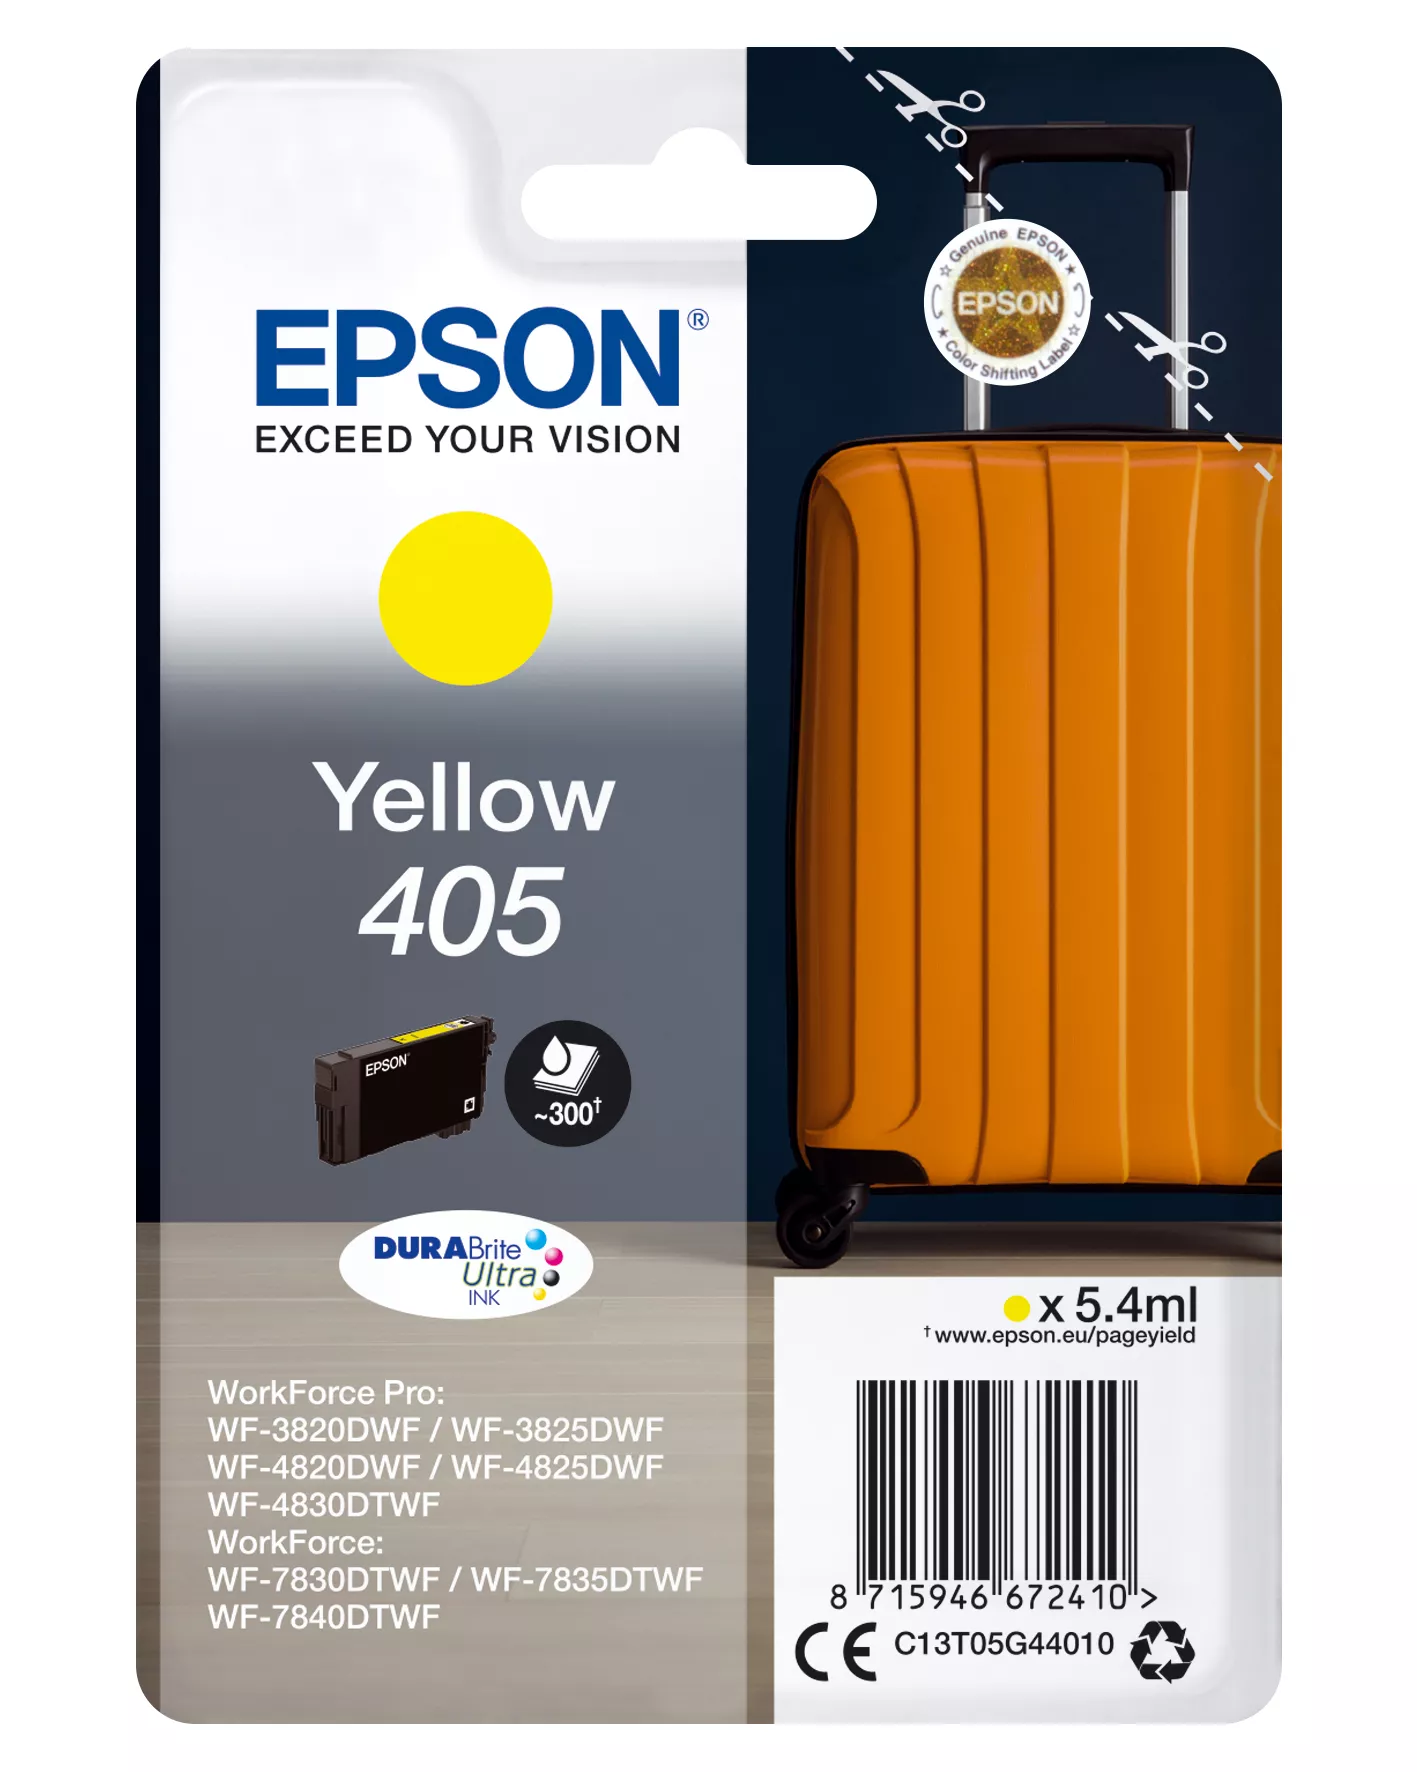 Achat Epson Singlepack Yellow 405 DURABrite Ultra Ink et autres produits de la marque Epson